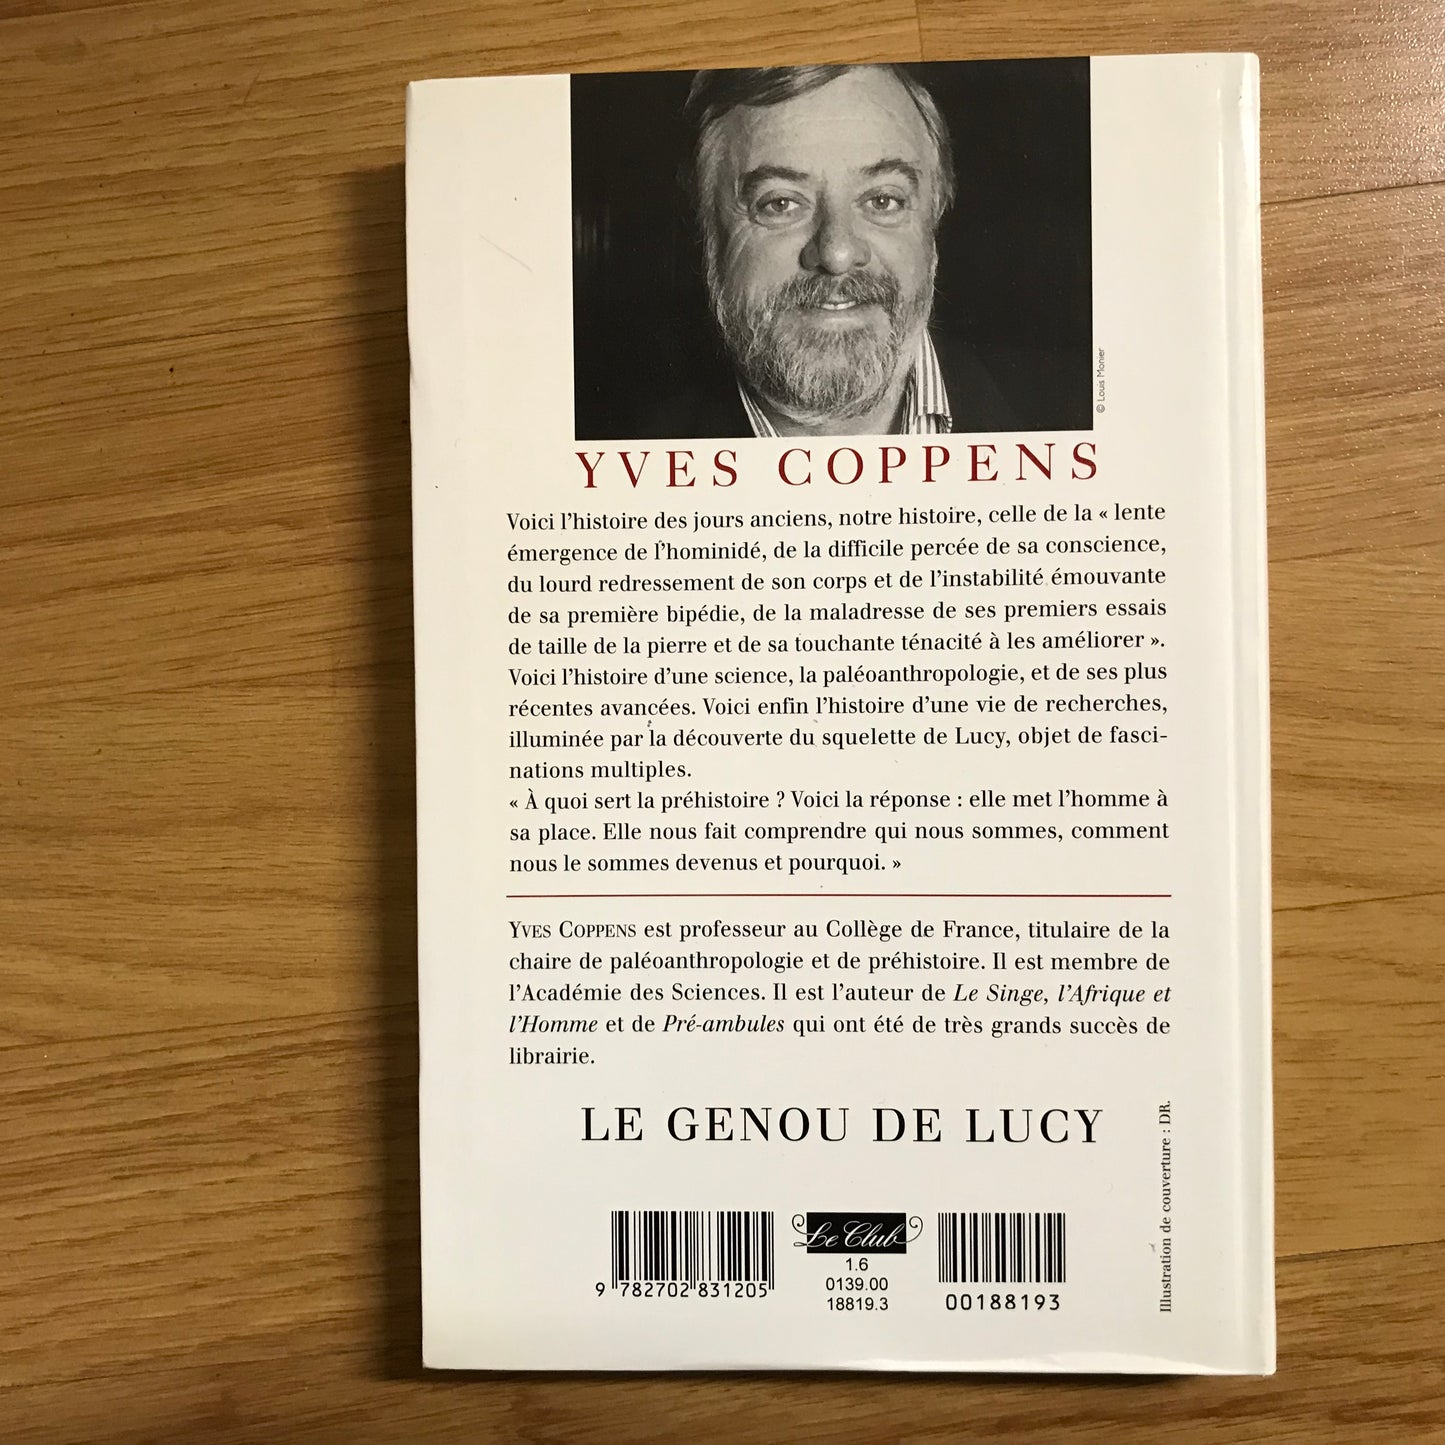 Coppens, Yves - Le genou de Lucy